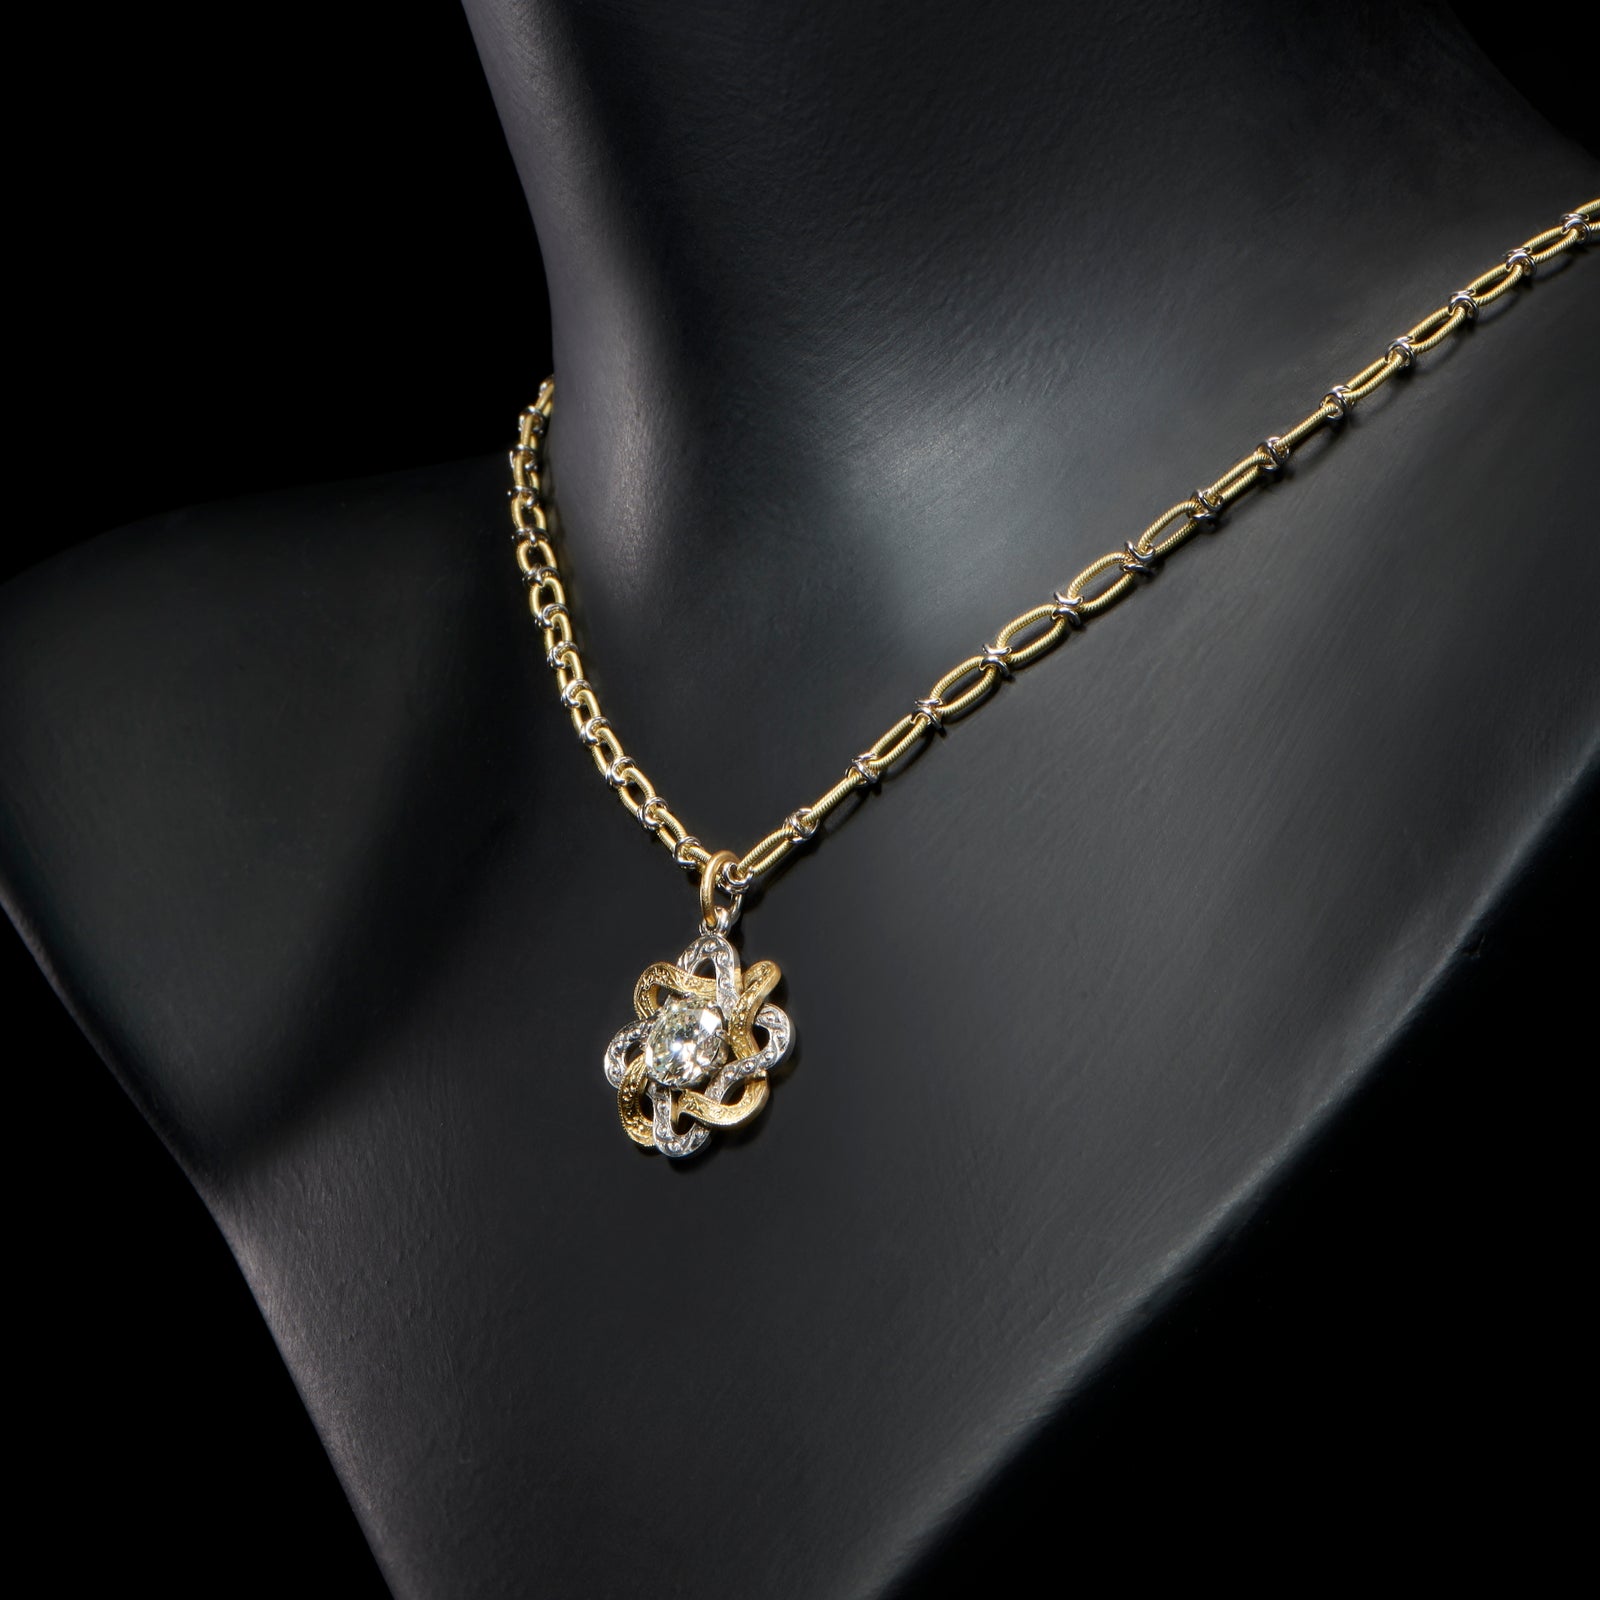 A unique diamond single stone pendant